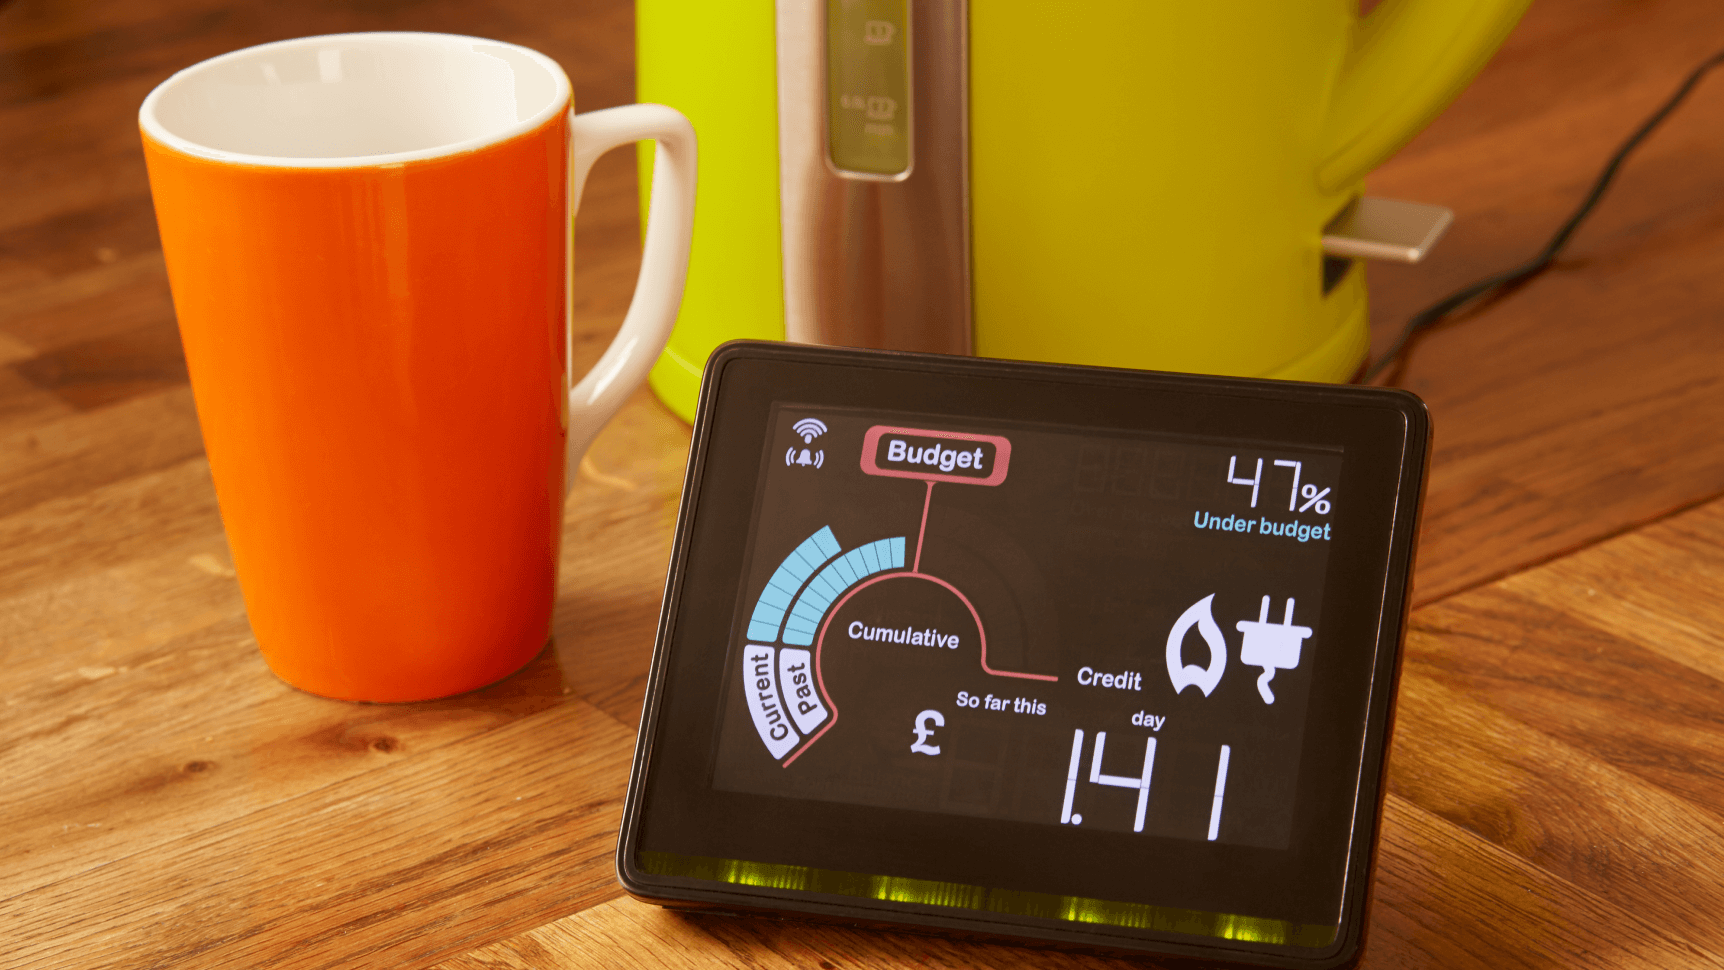 low money spent reading on smart meter